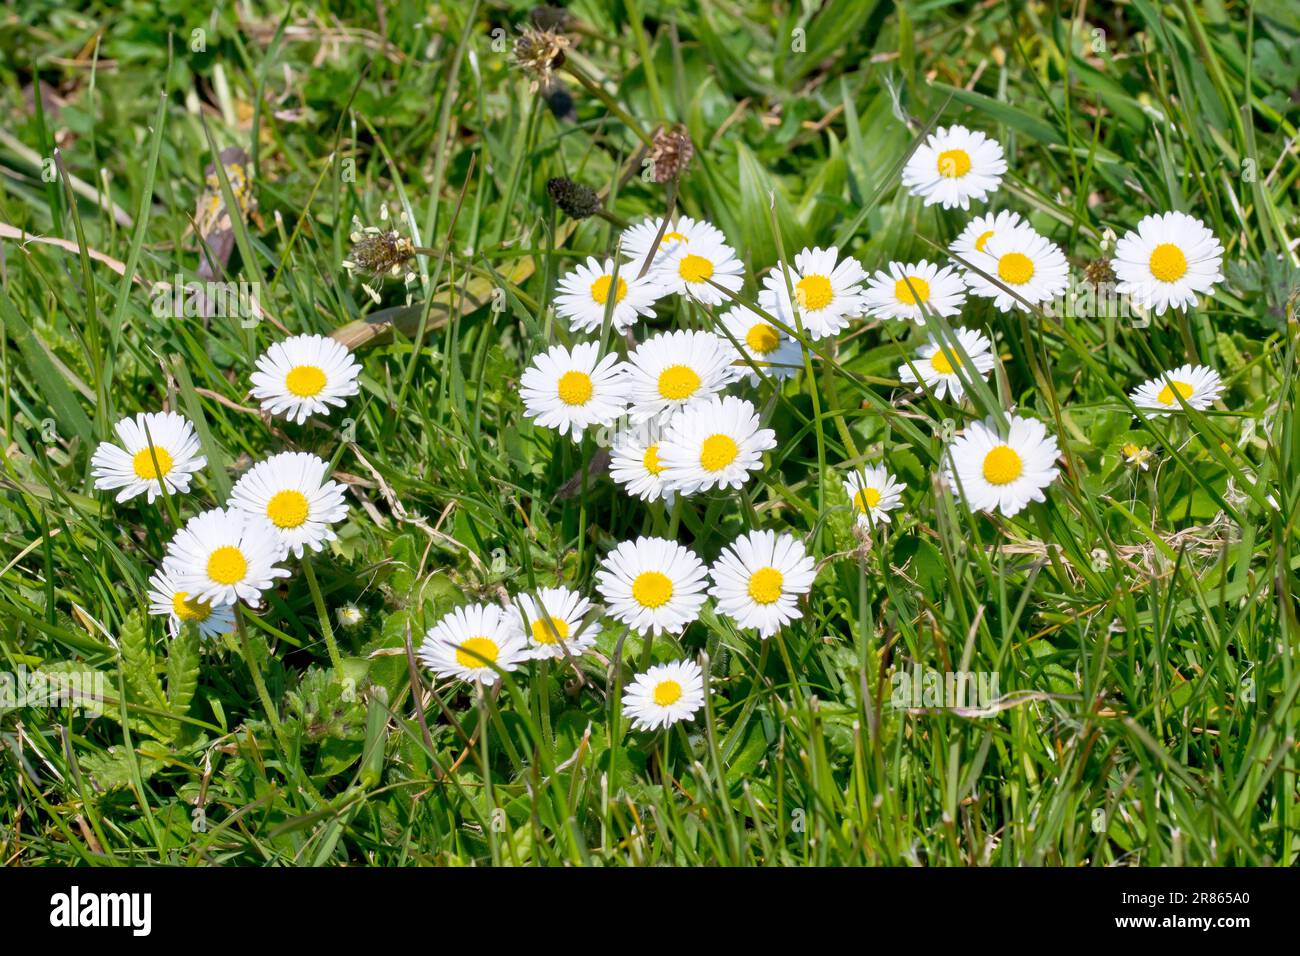 Daisy oder Daisies (bellis perennis), Nahaufnahme einer Gruppe der sehr verbreiteten Wildblumen, die im rauen Gras am Rand eines Parks wachsen. Stockfoto